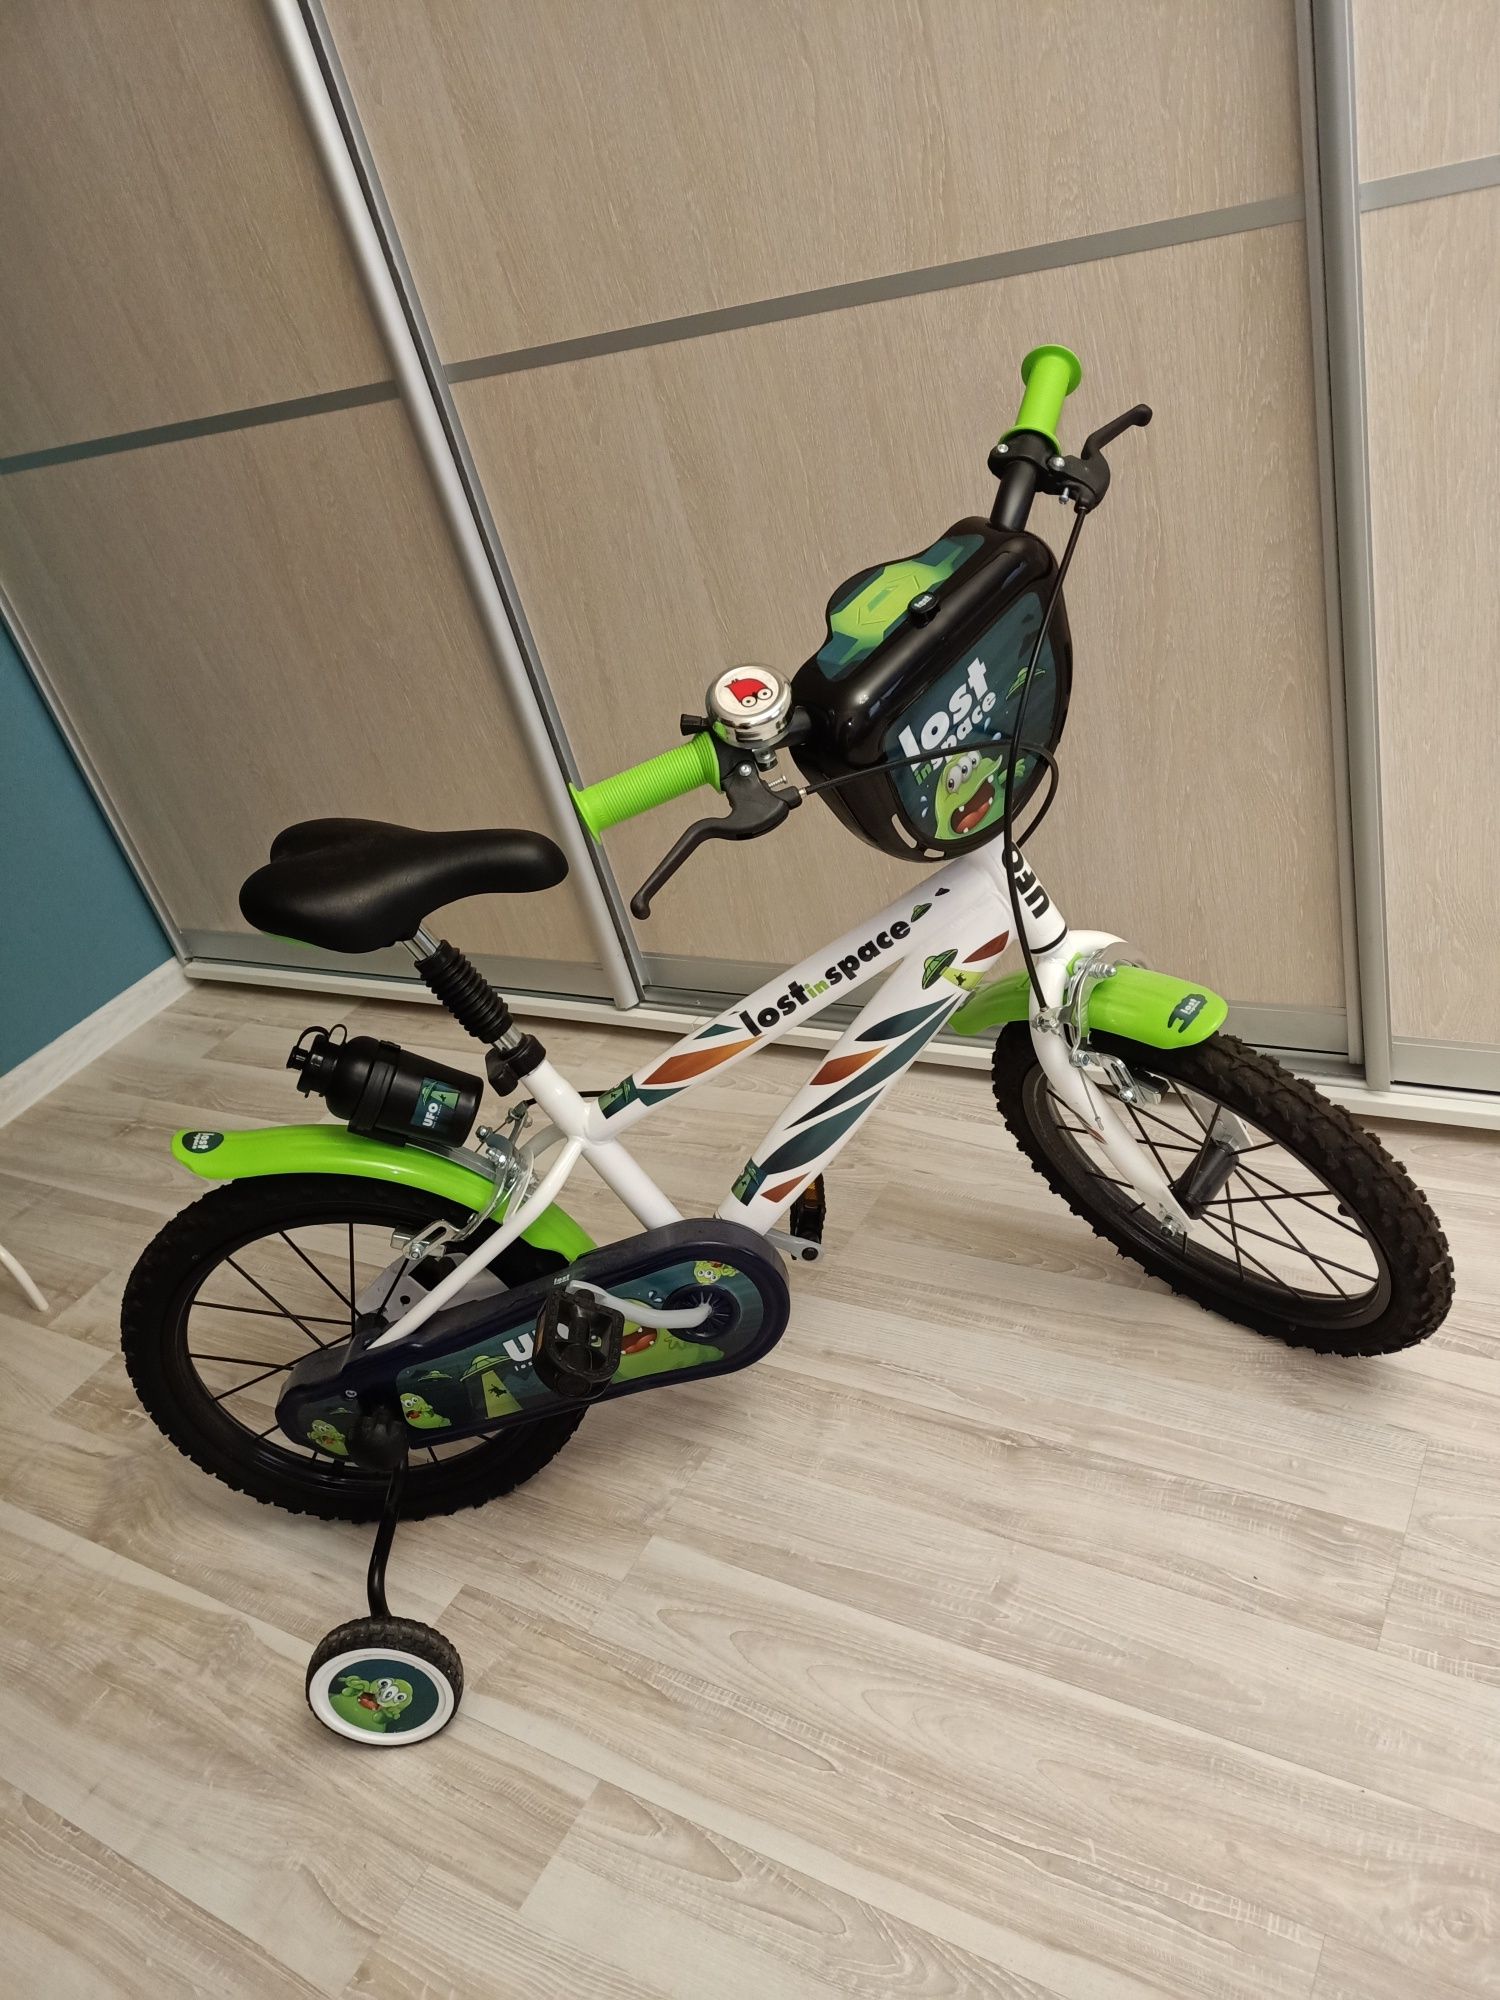 Дитячий велосипед для 6-7 років,м Хмельницький,р-н озерна,самовивіз.